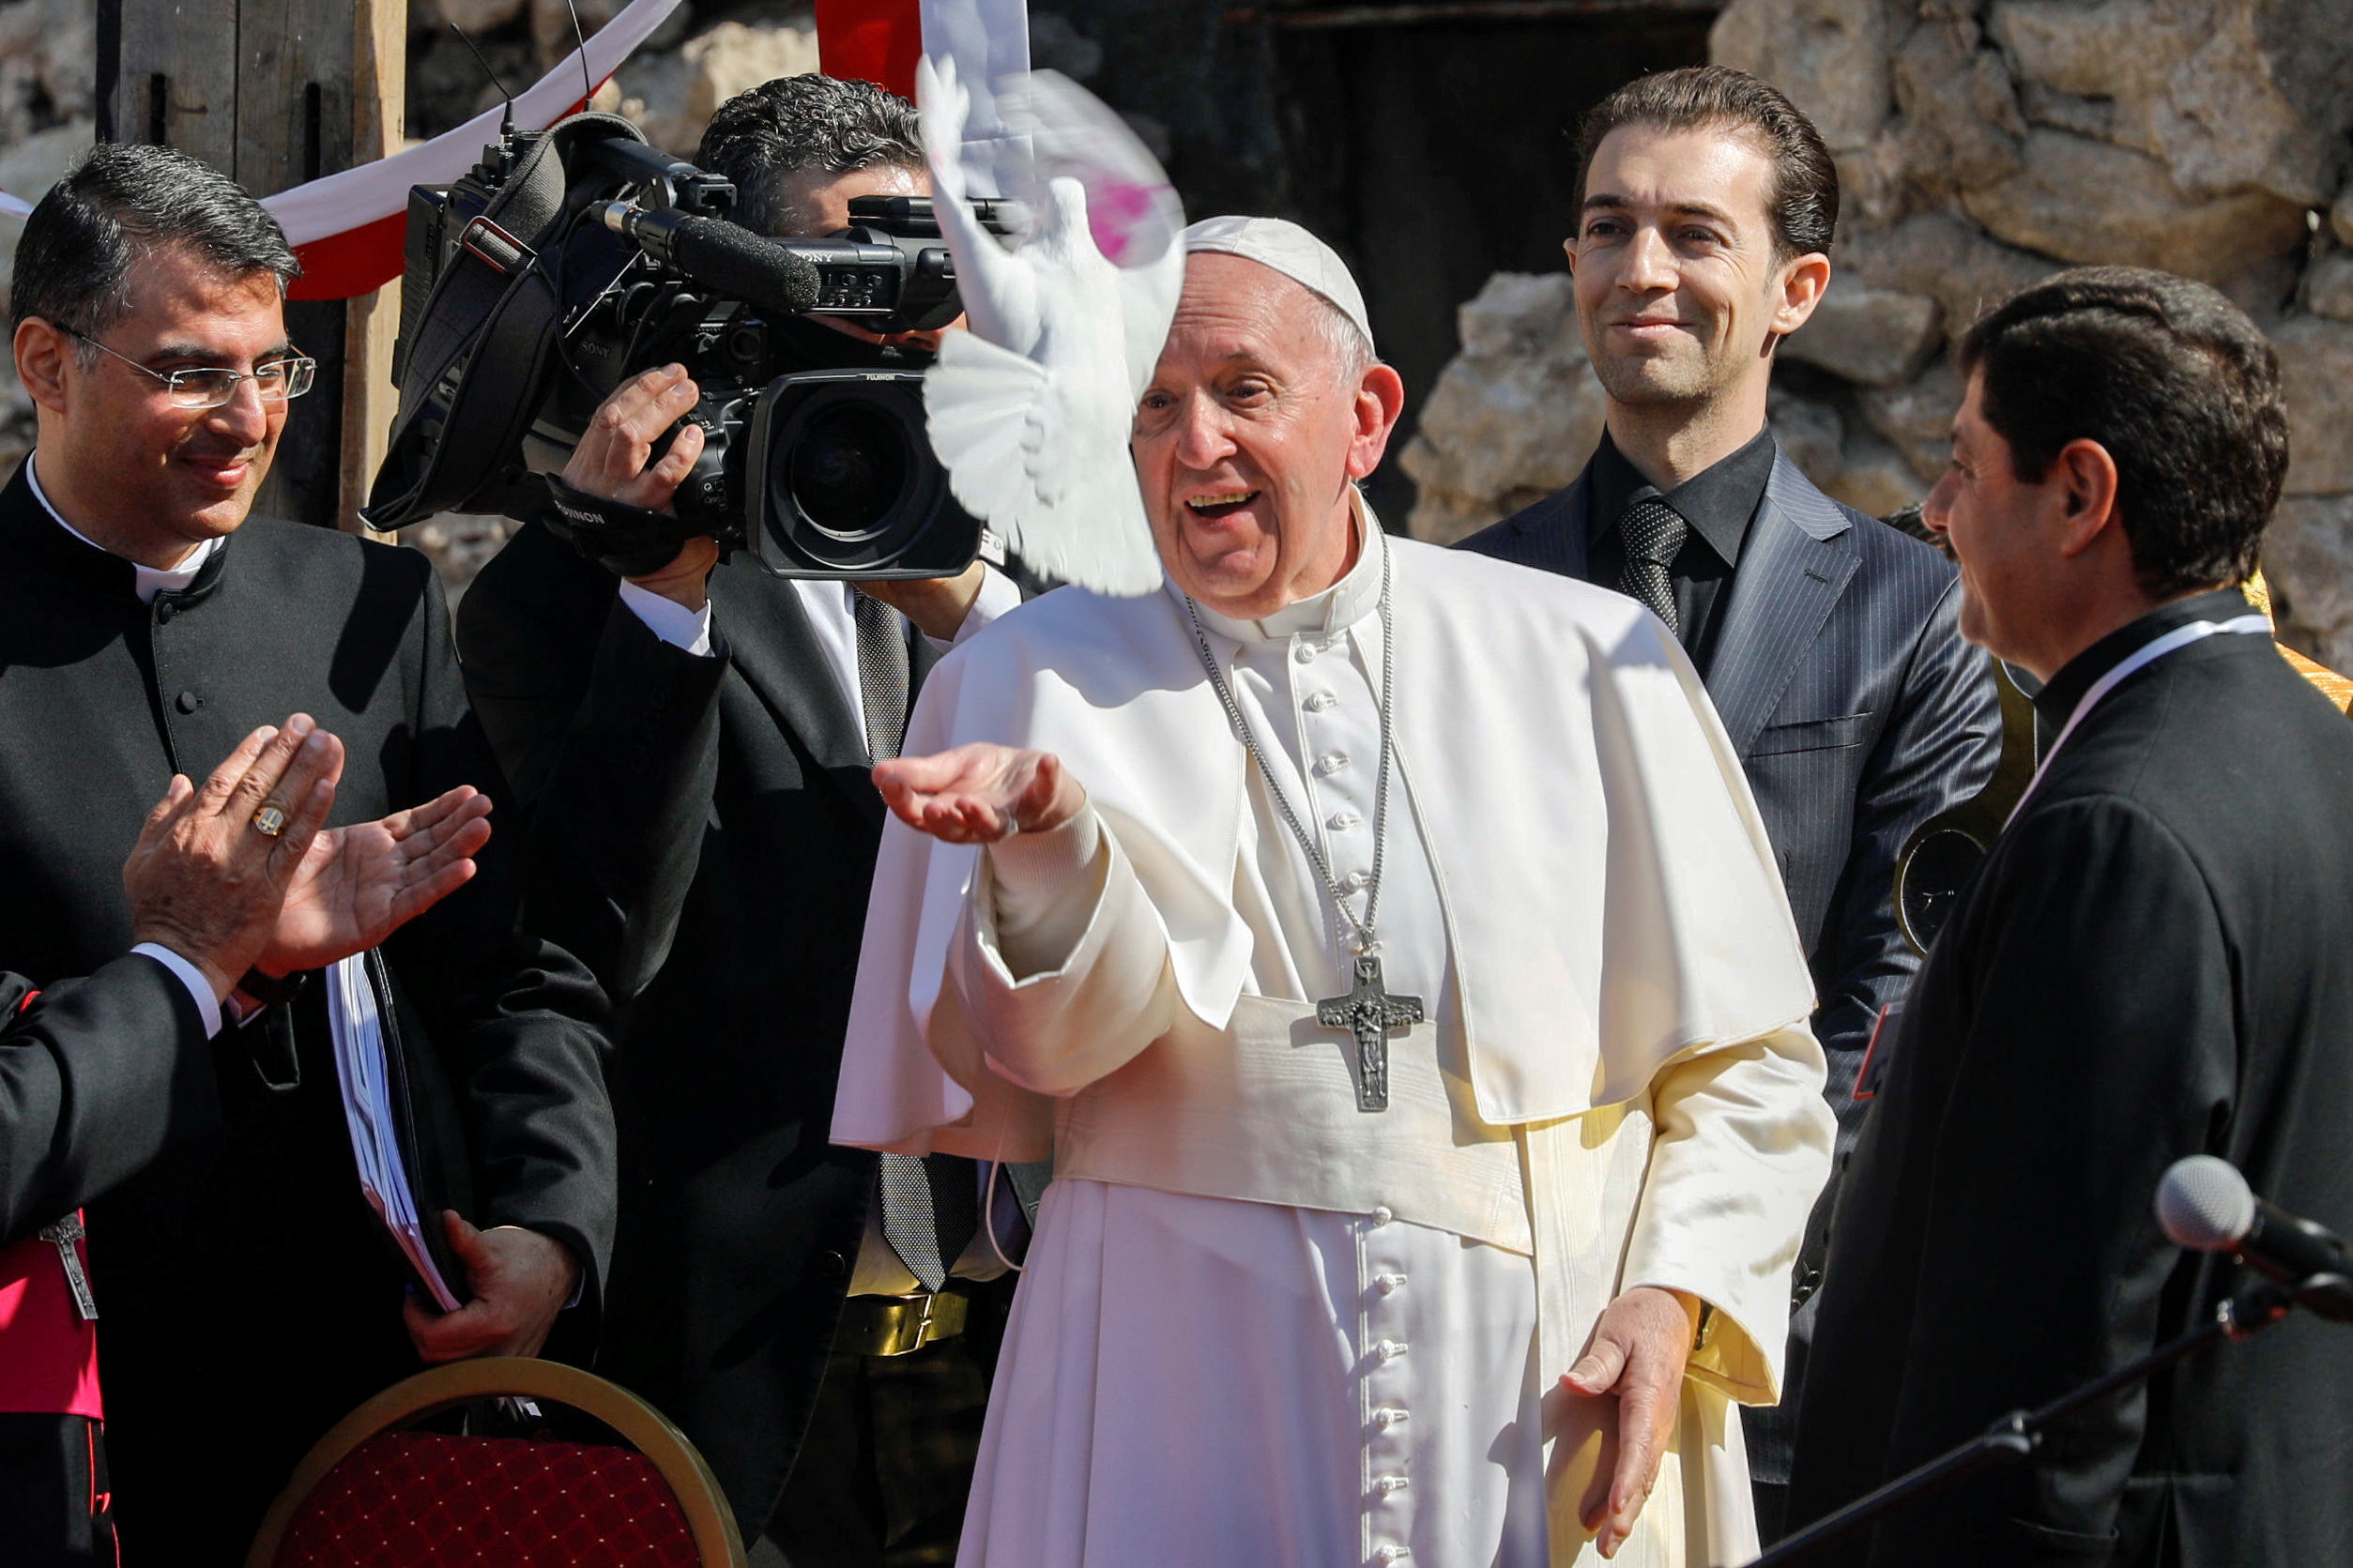 El Papa suelta una paloma durante el rezo por las víctimas (Reuters)